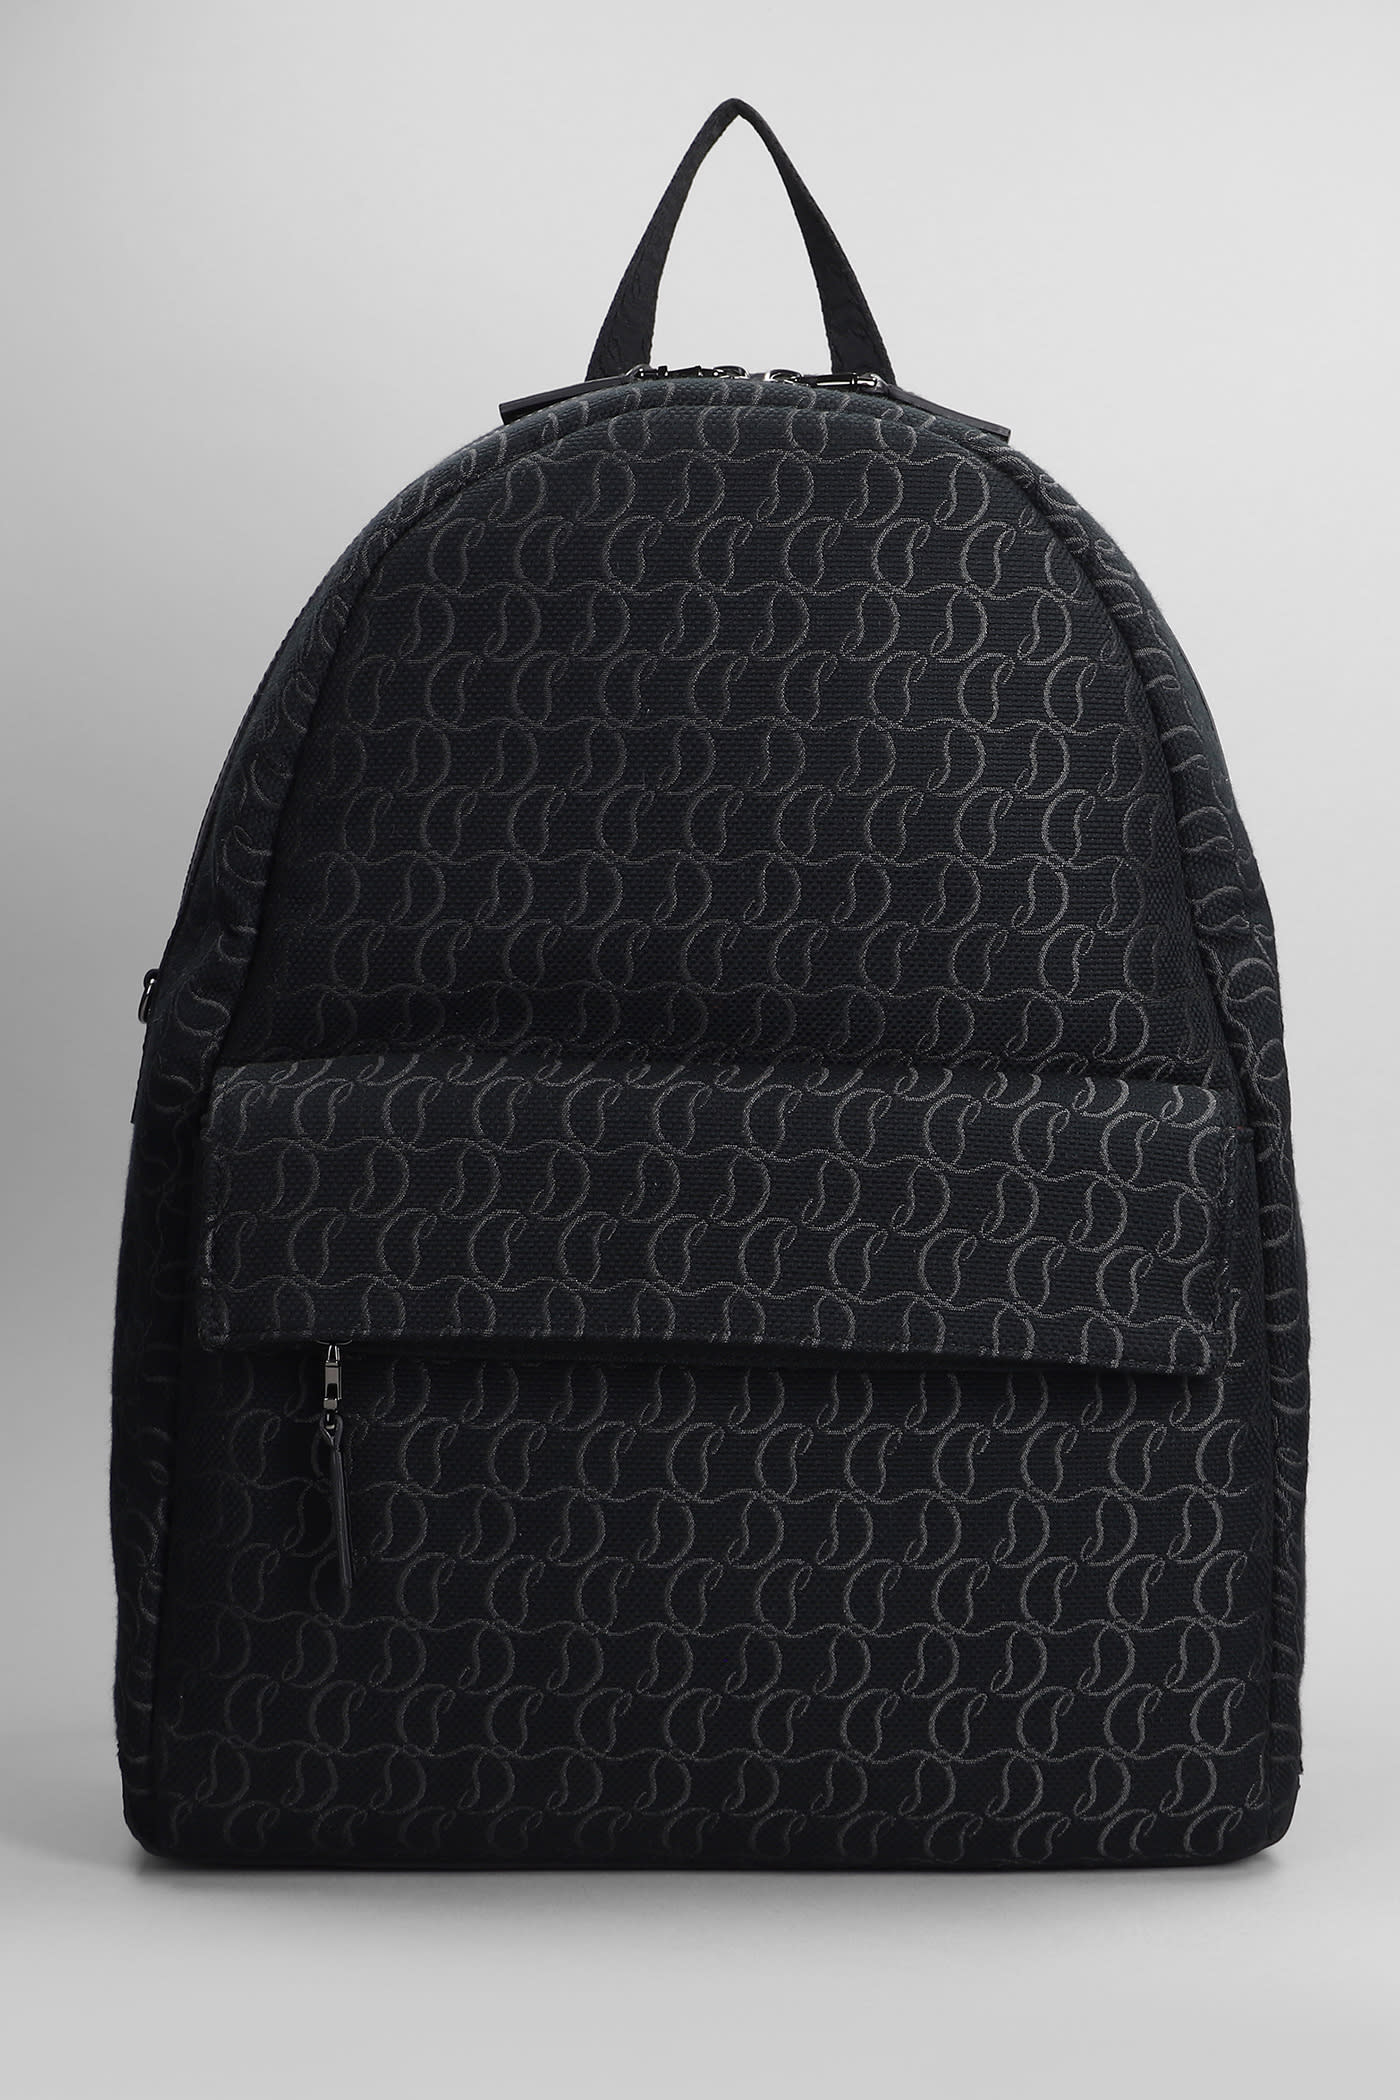 Zip N Flap Backpack In Black Cotton